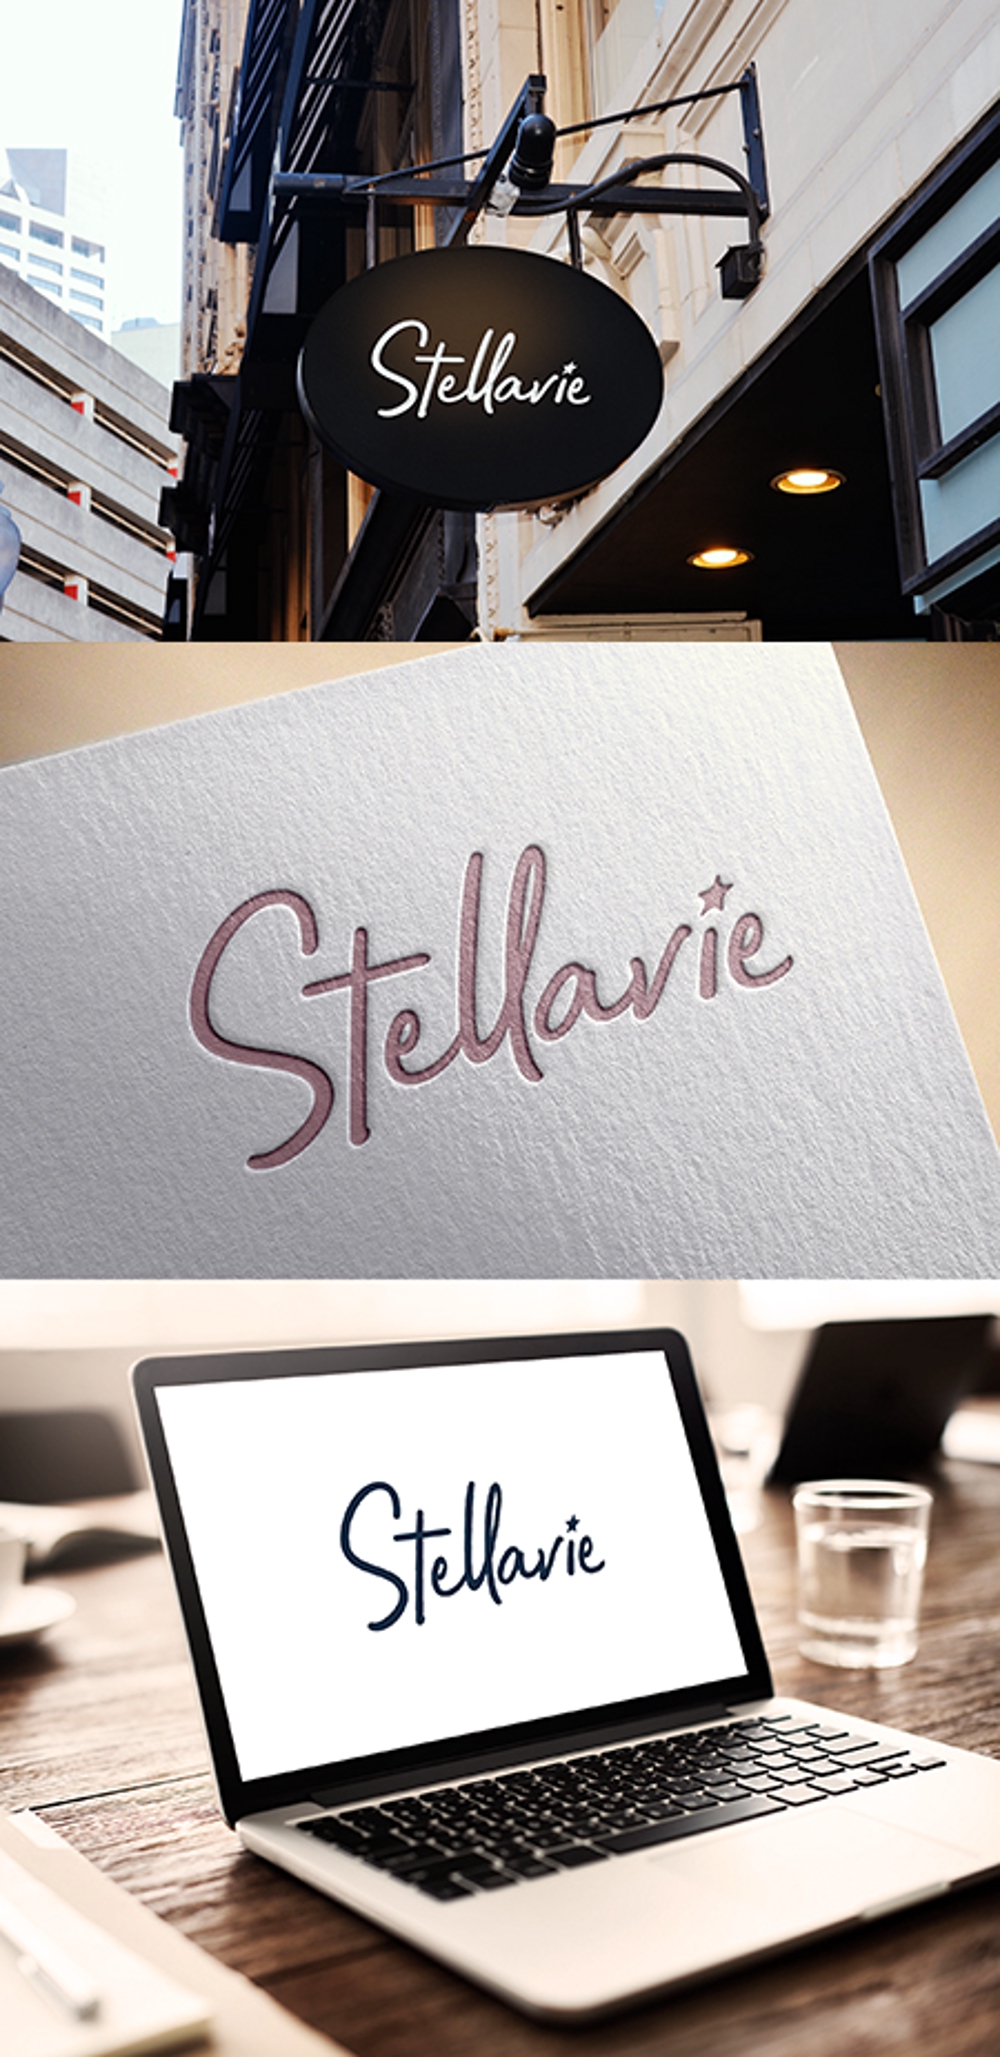 女性向け美容サロン「stellavie」のロゴ